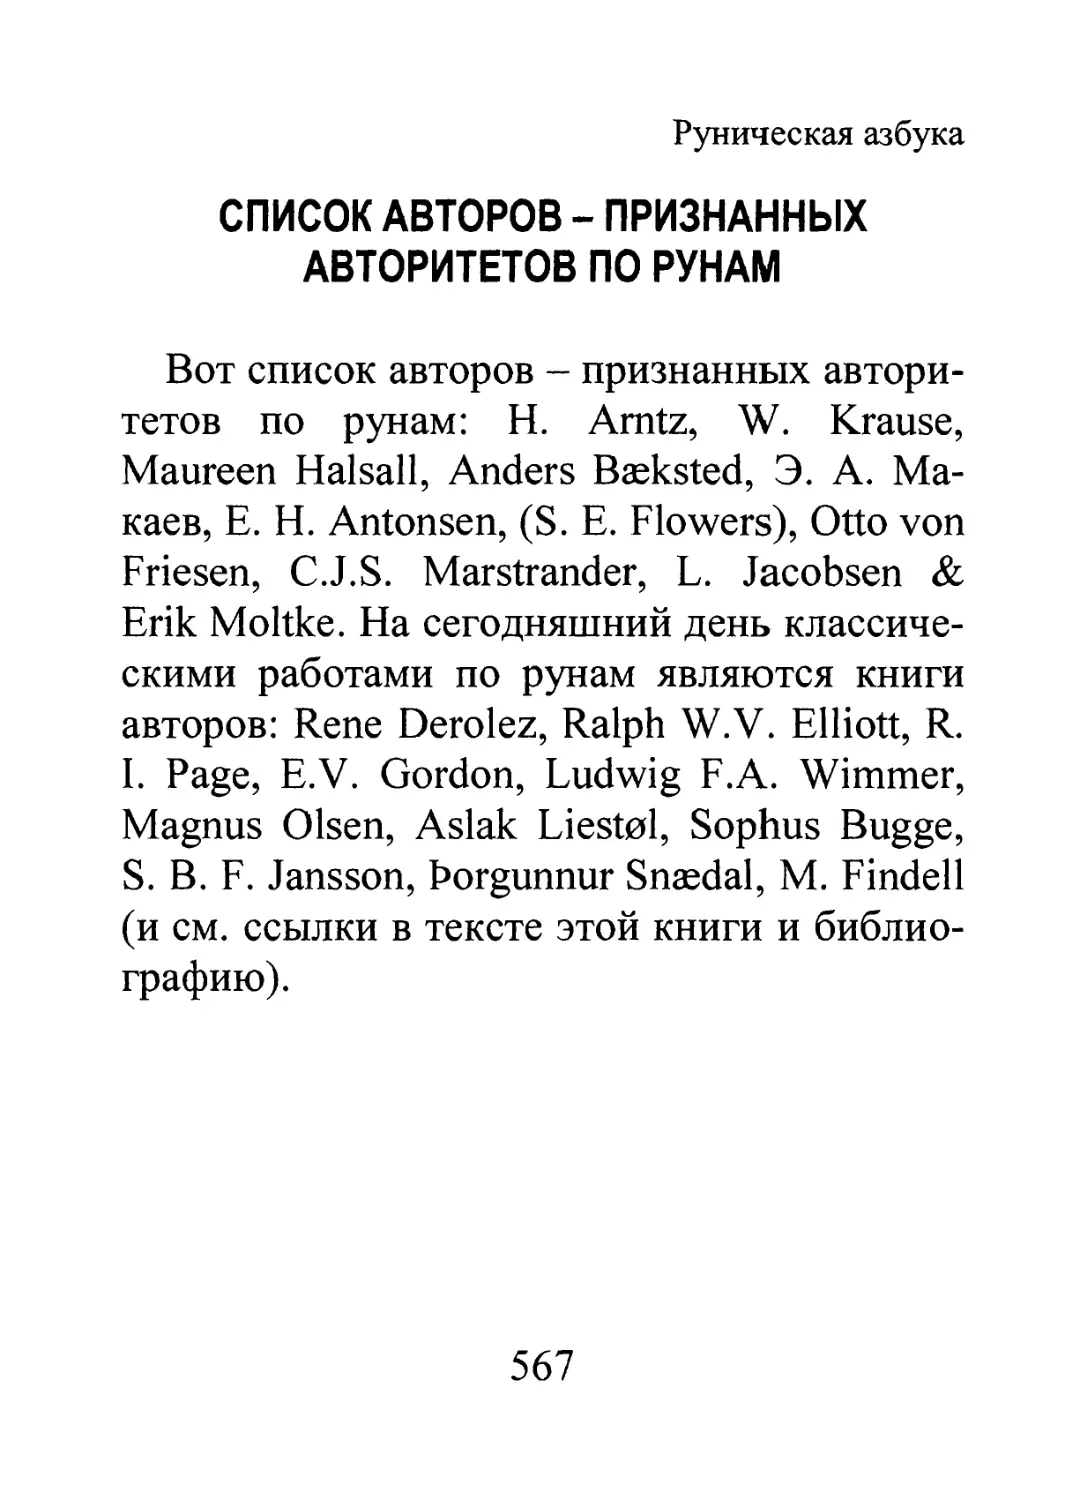 Список авторов - признанных авторитетов по рунам